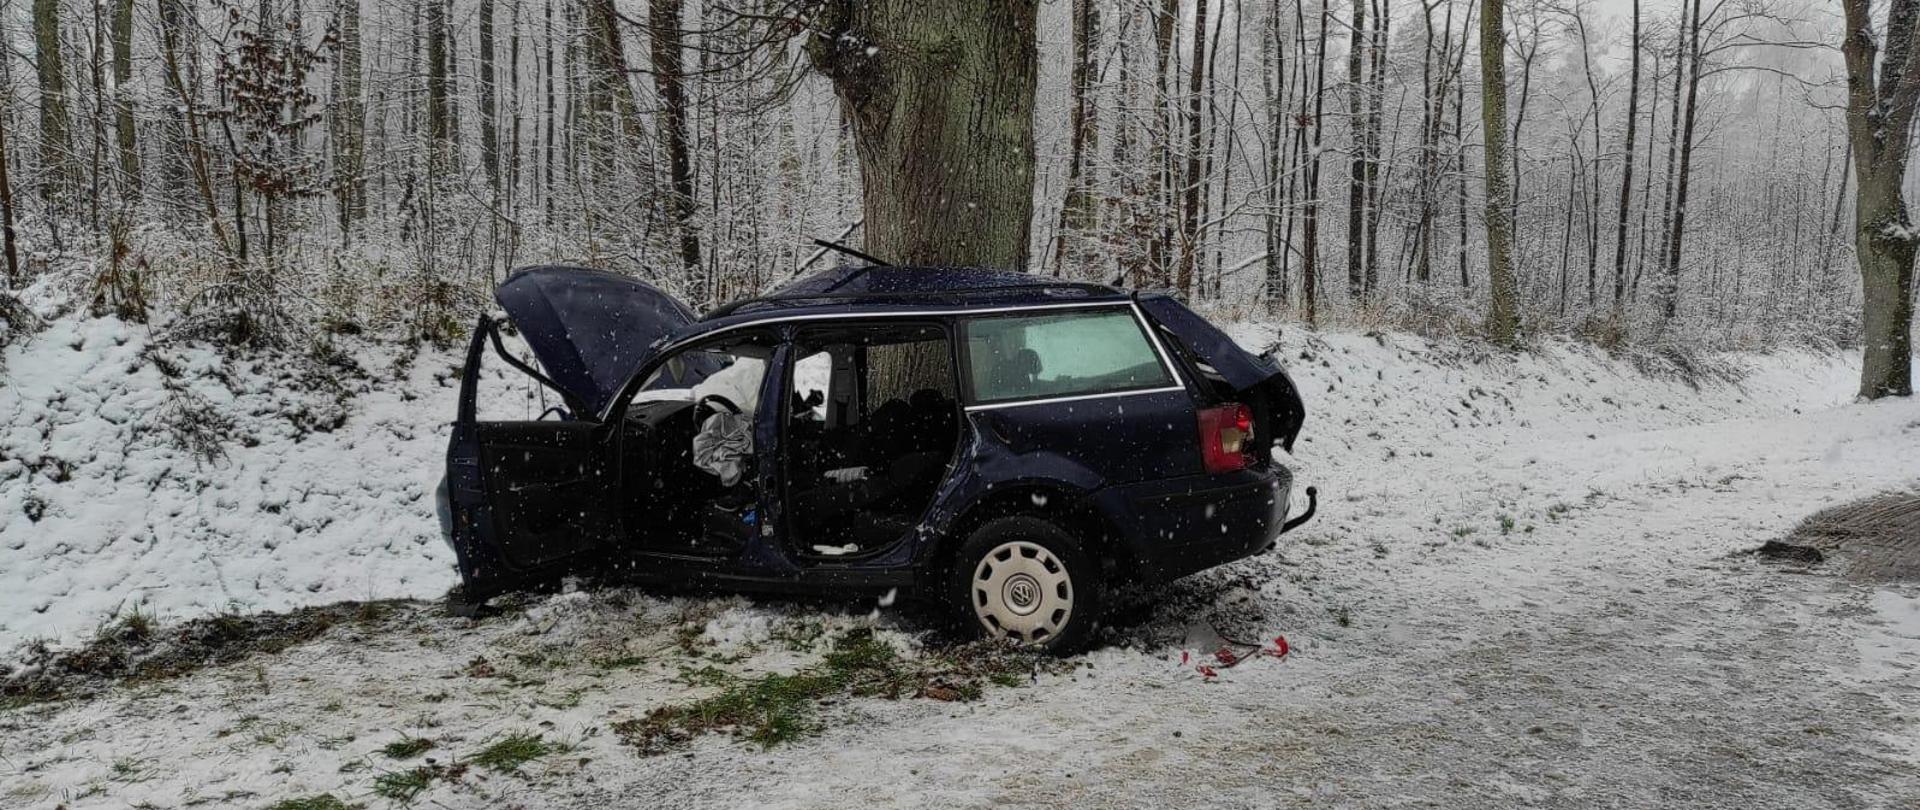 Na poboczu drogi stoi auto, niebieskie kombi, które uderzyło bokiem prawym w drzewo. Biało od śniegu.